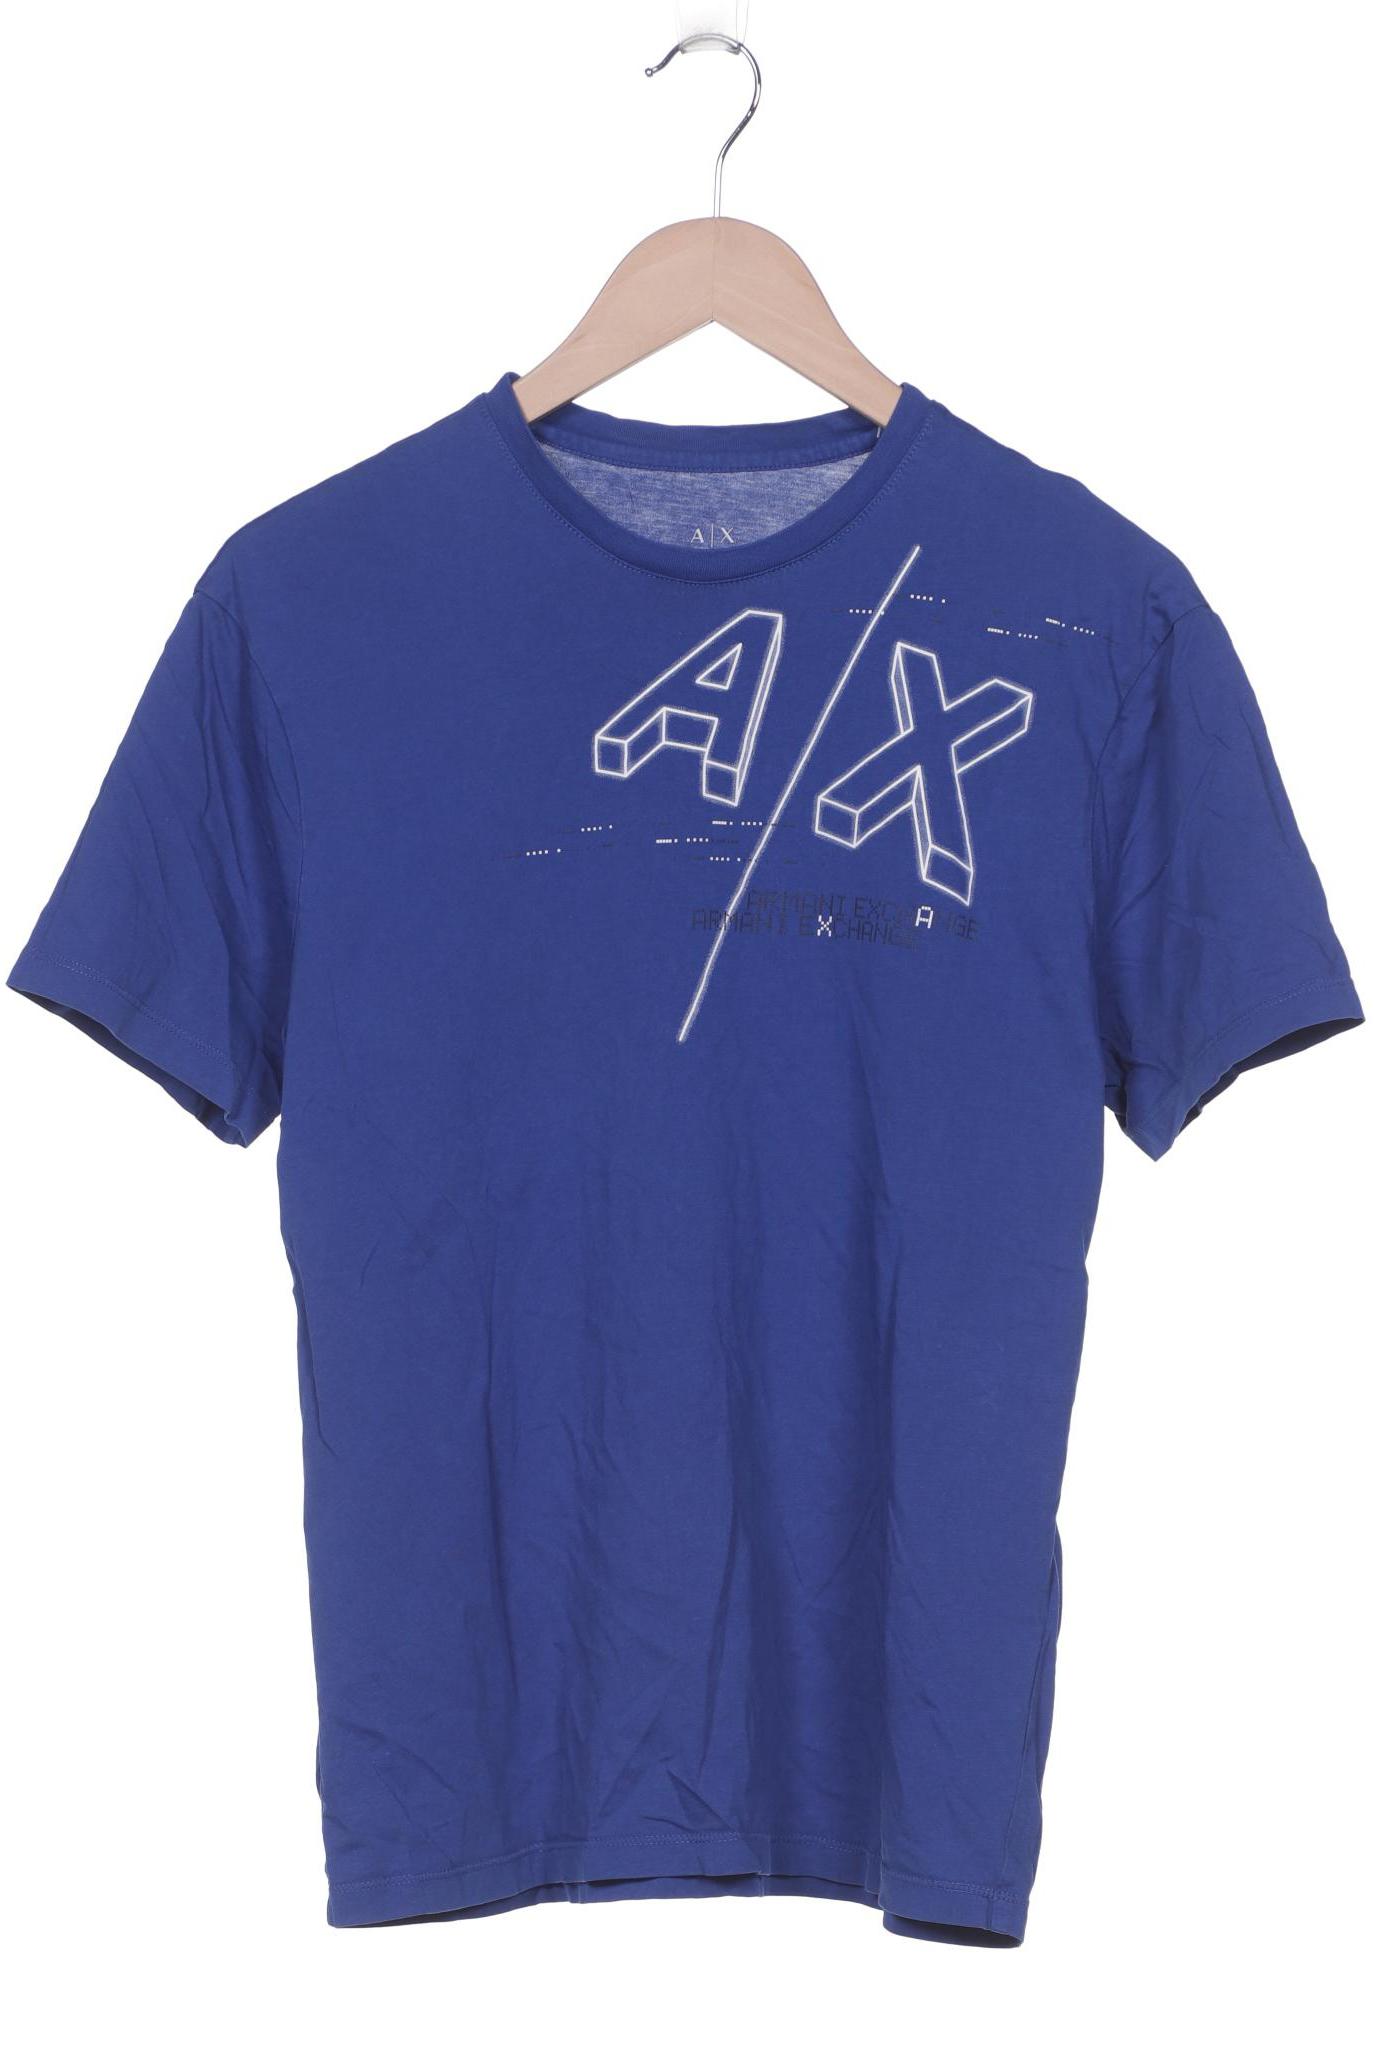 AX Armani Exchange Herren T-Shirt, blau, Gr. 48 von AX Armani Exchange